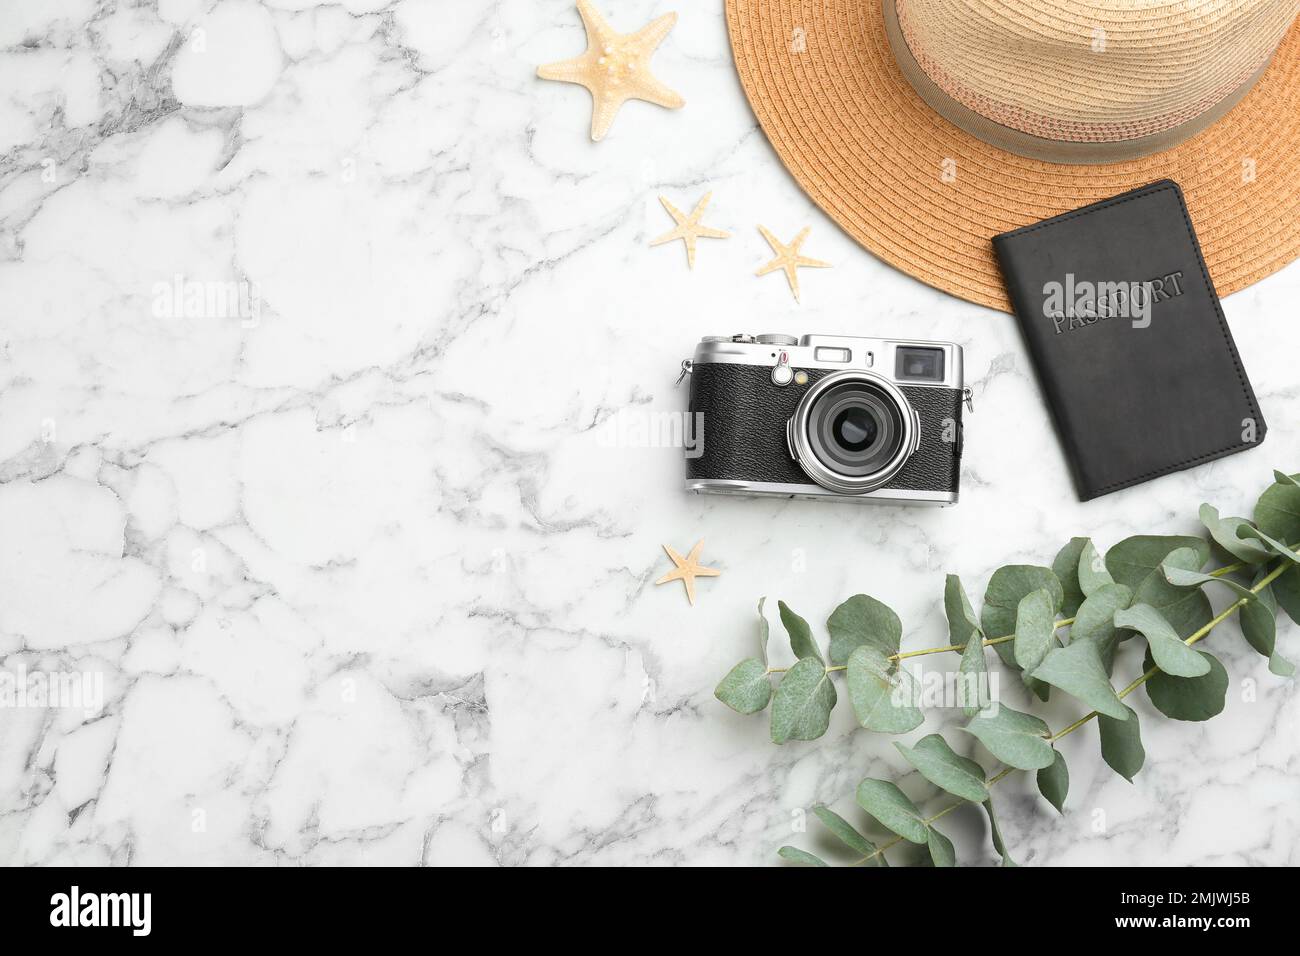 Composizione a posa piatta con fotocamera fotografo professionista, passaporto e spazio per testo su tavolo in marmo bianco Foto Stock